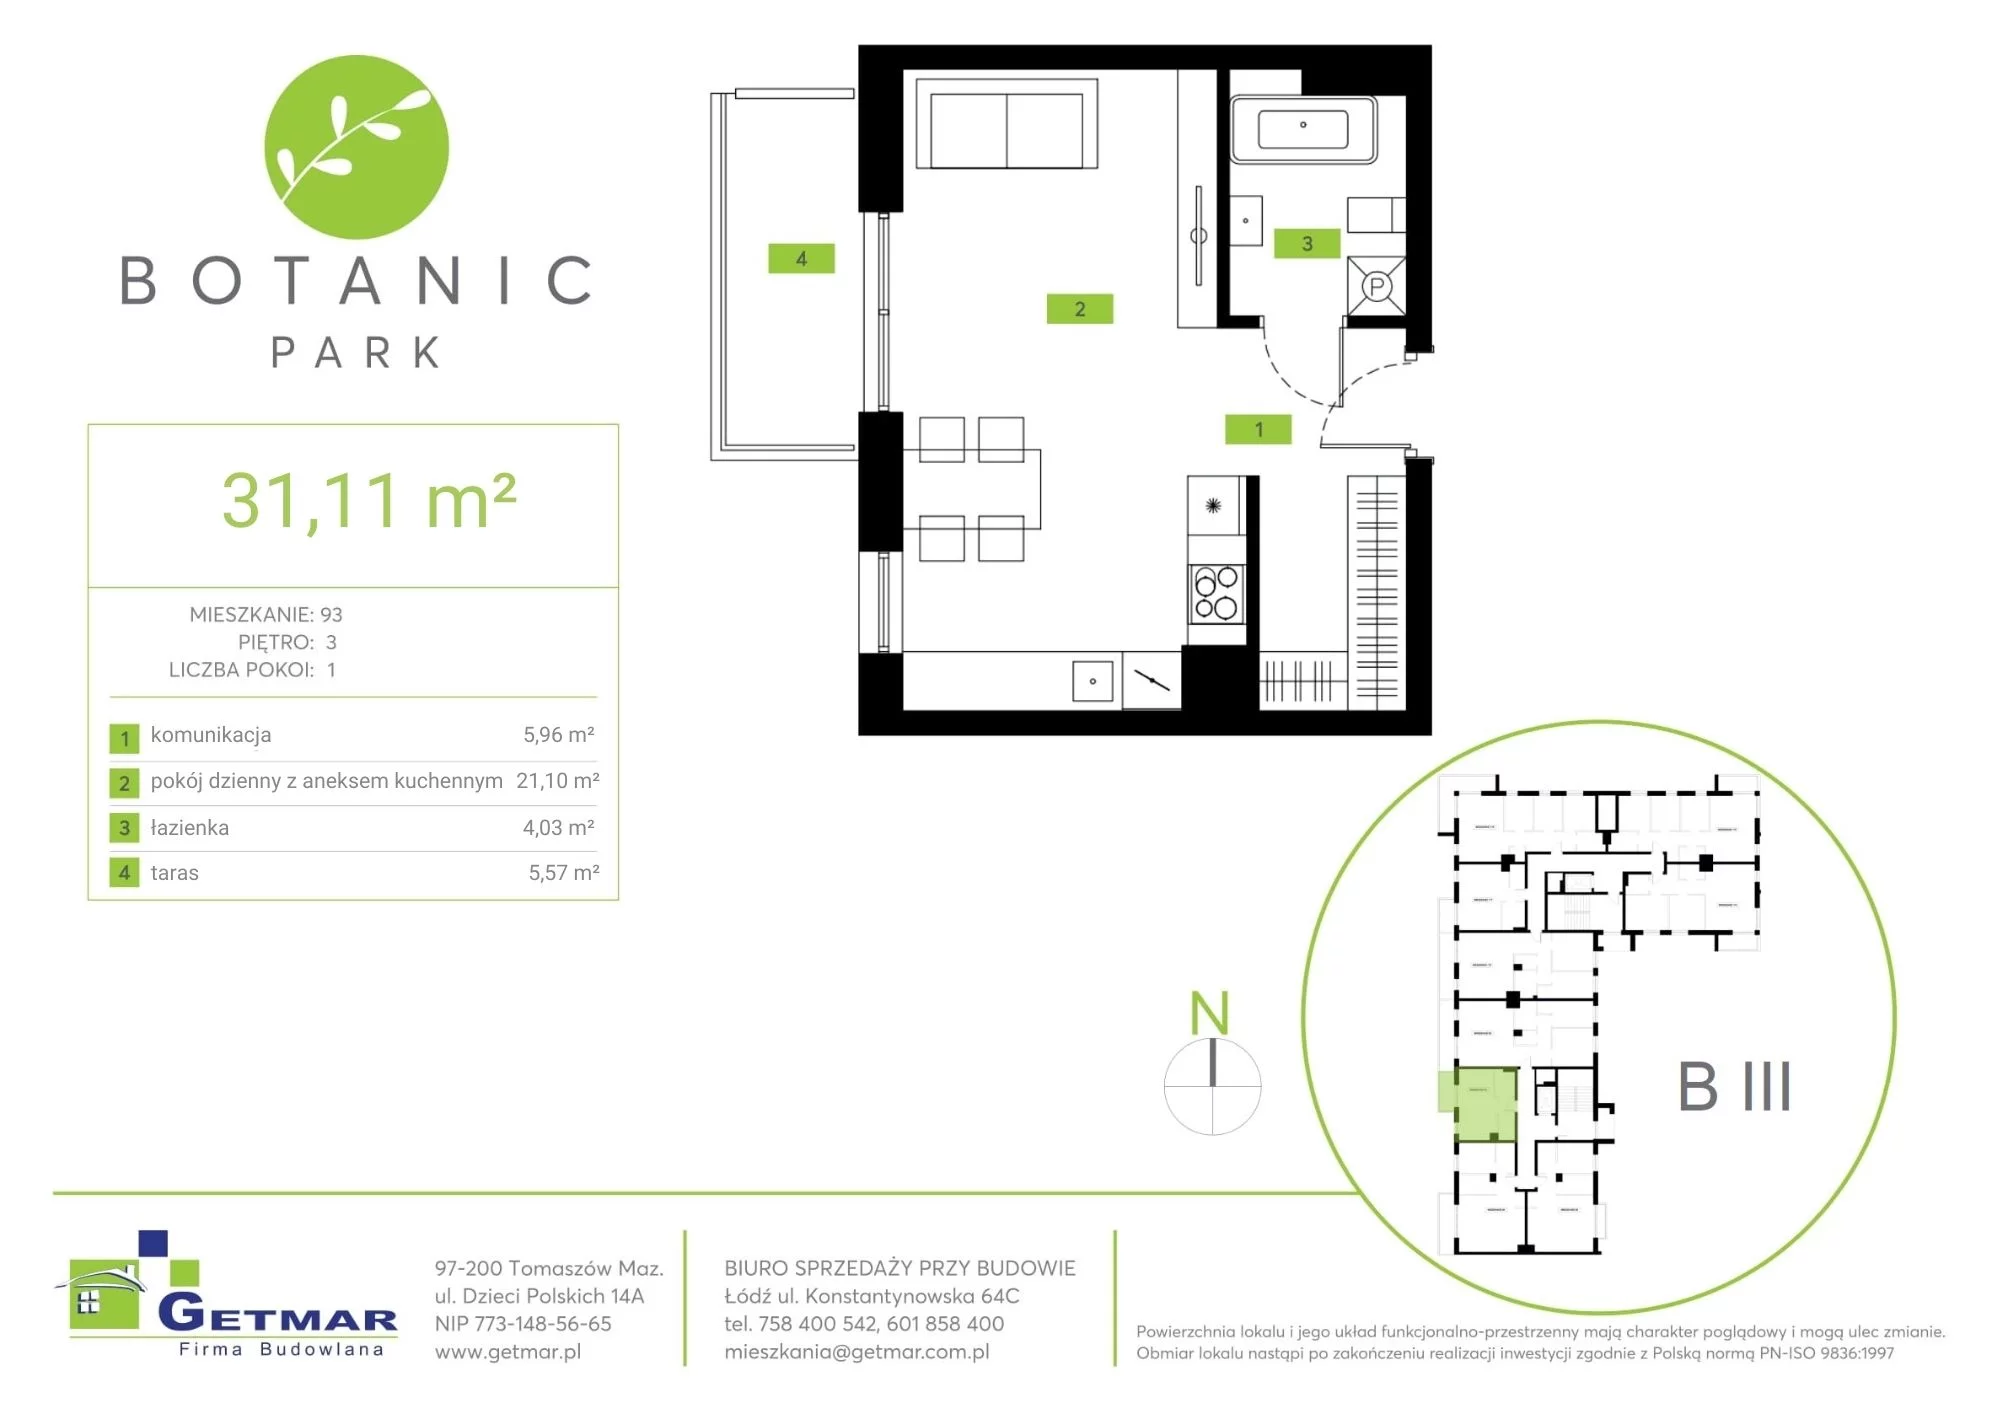 Mieszkanie 31,11 m², piętro 3, oferta nr 93, Botanic Park, Łódź, Polesie, Złotno, ul. Konstantynowska 64c